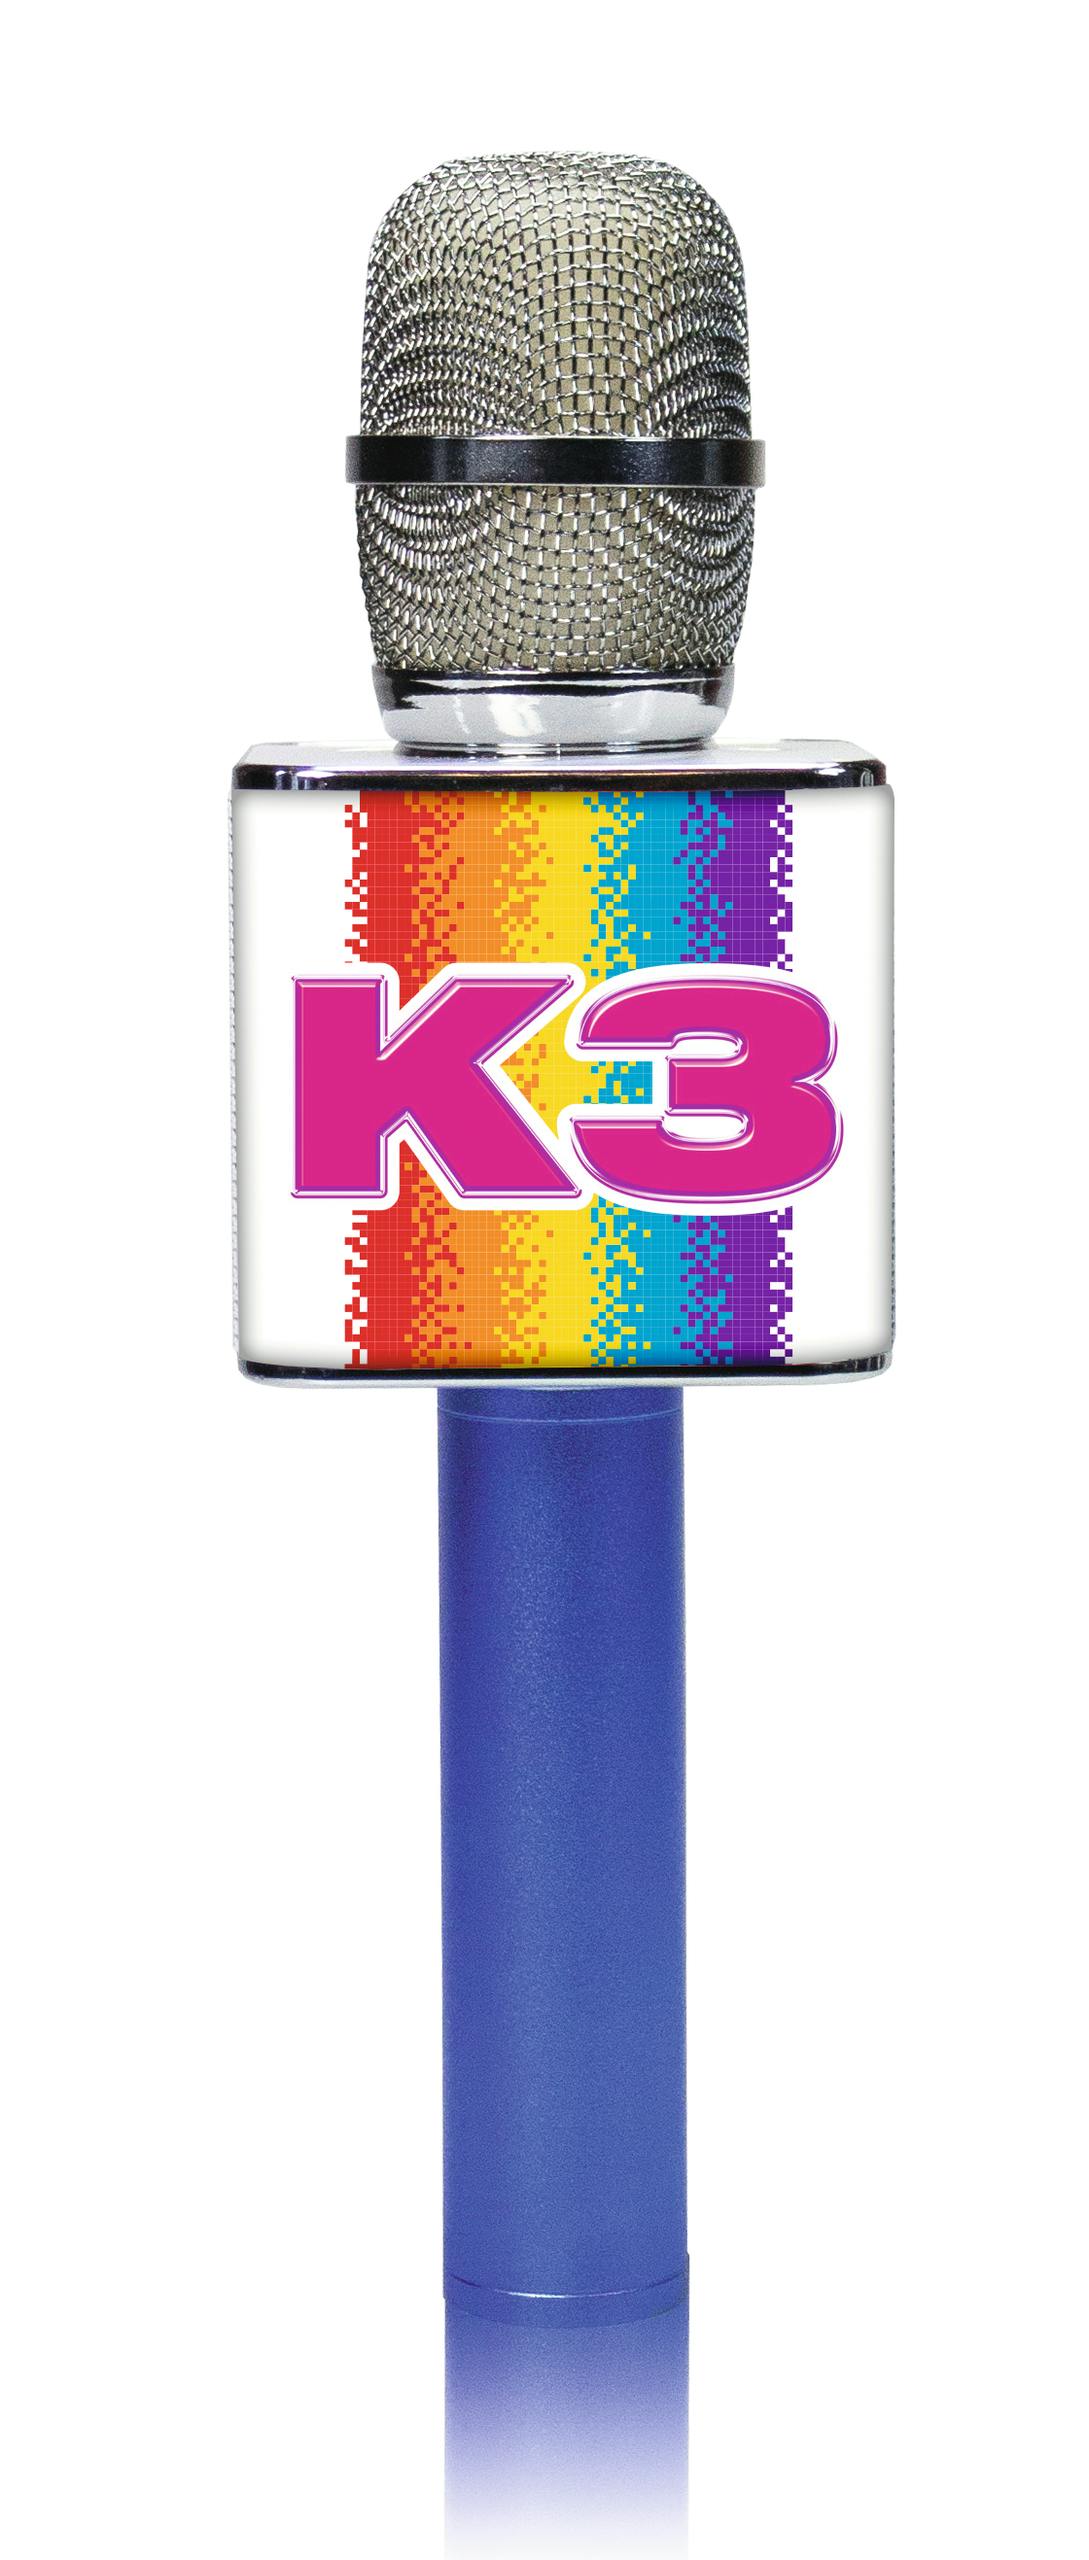 Microphone Karaoké K3 Avec Haut-parleur Intégré